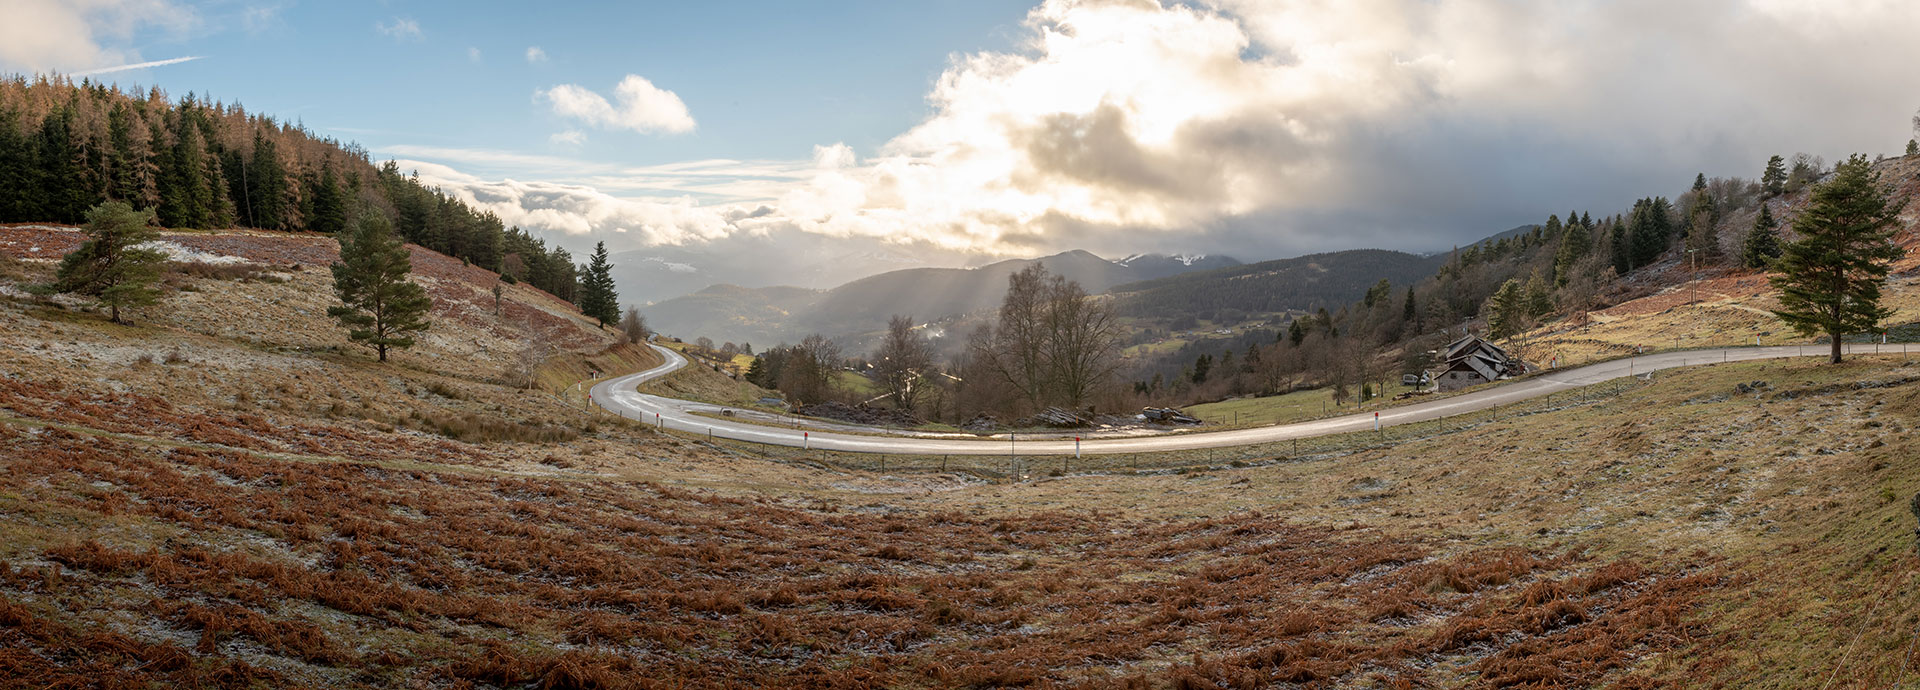 The Crètes des Vosges road and its dreamy landscapes